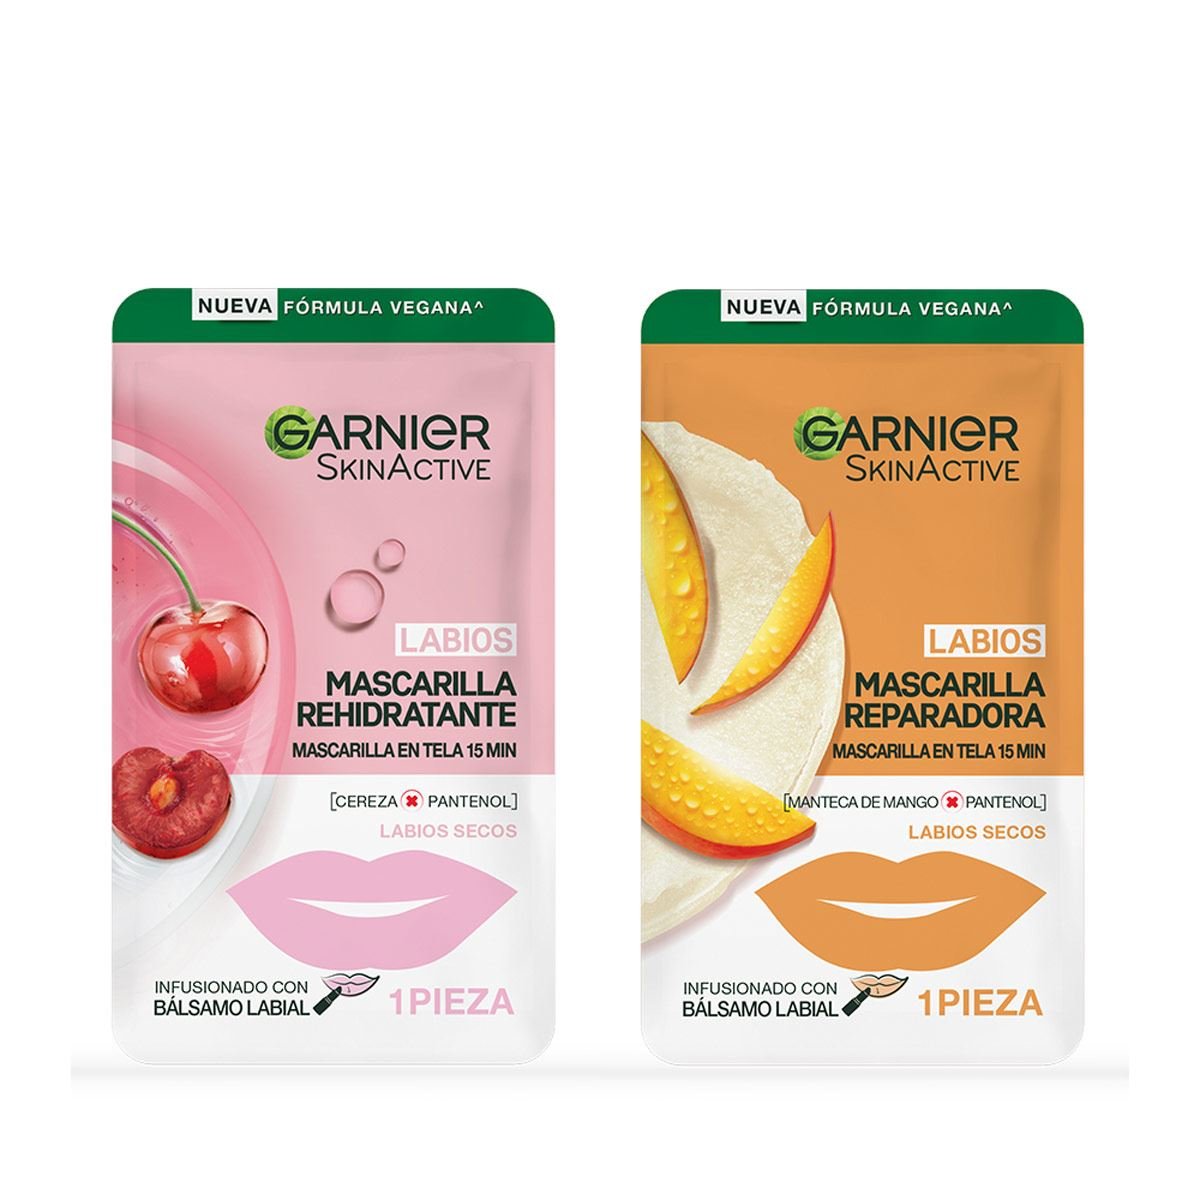 Garnier Skin Active Hidra Bomb Mascarilla en Tela Rehidratante Labios 1 pza